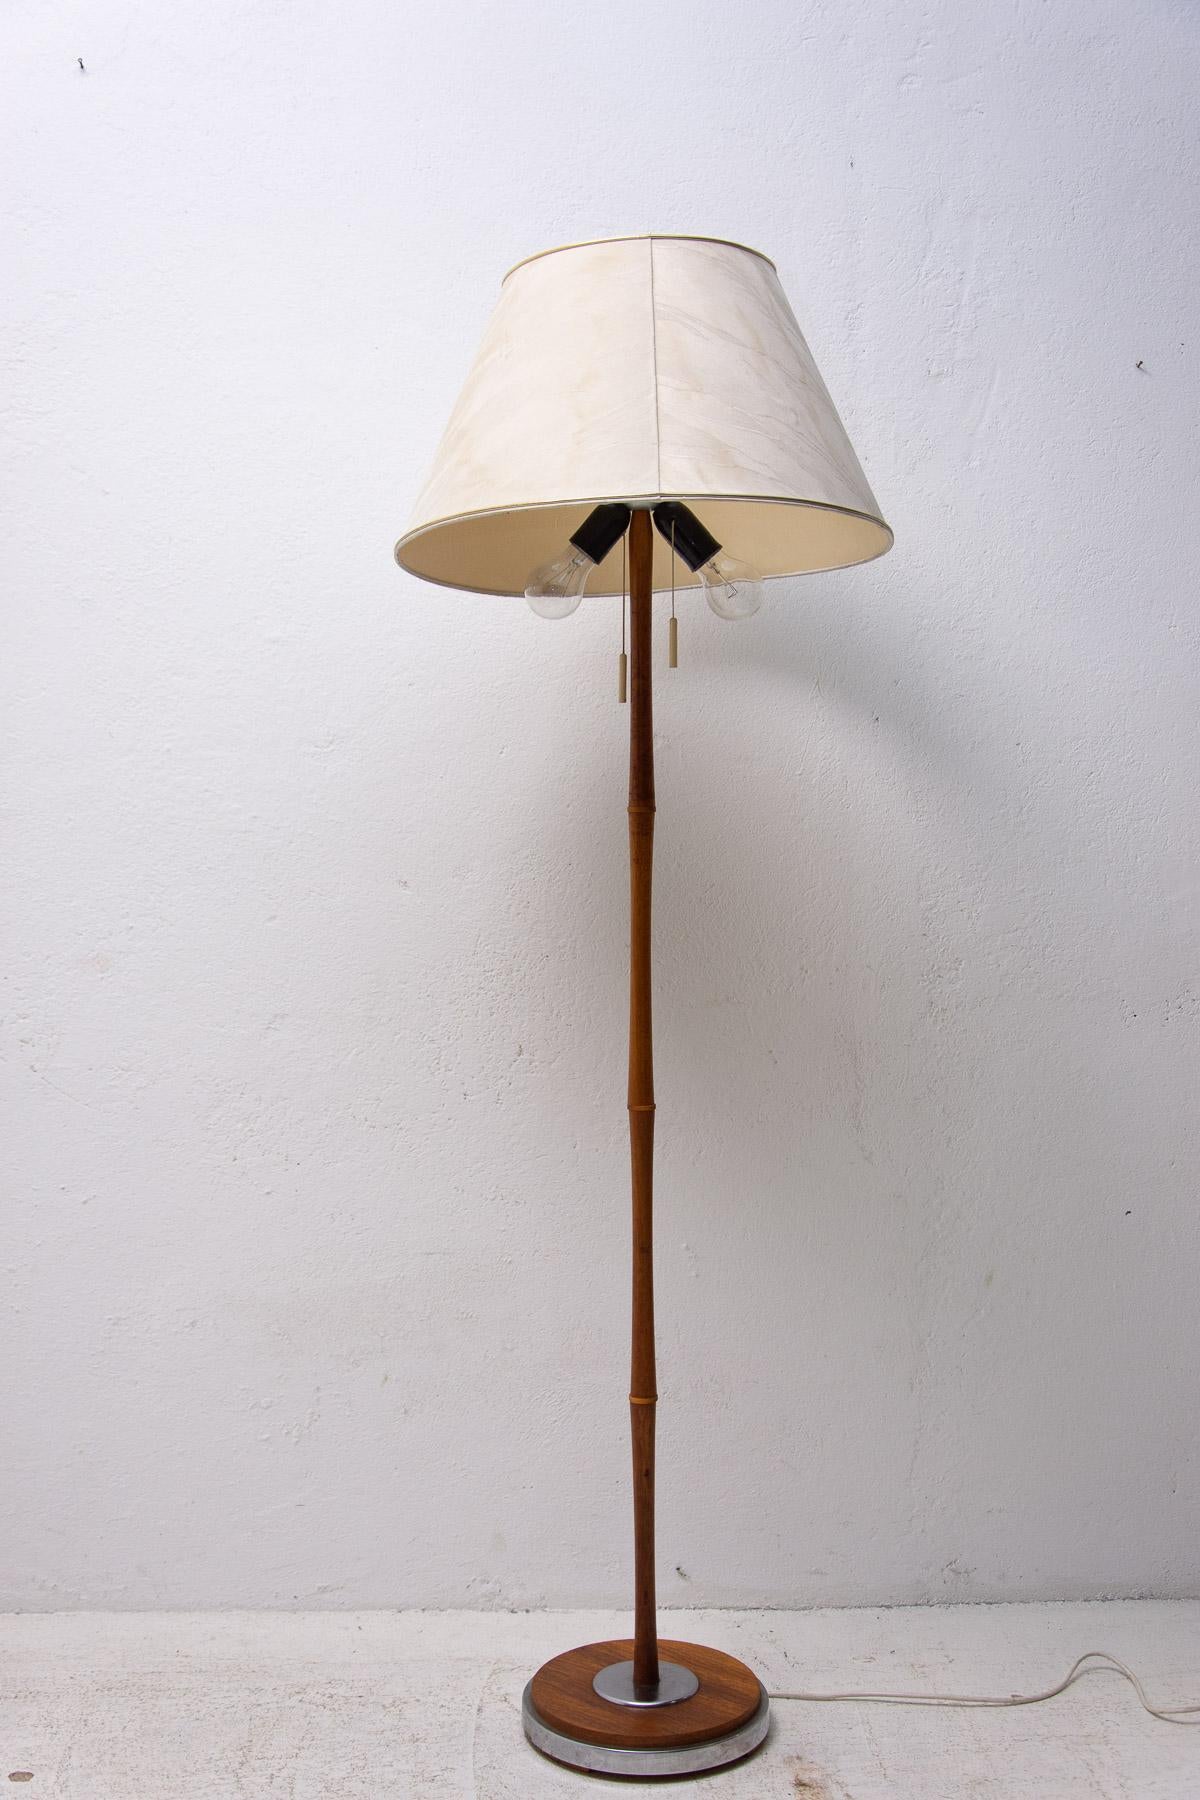 Lampadaire du milieu du siècle des années 1960. Il a été fabriqué dans l'ancienne Tchécoslovaquie.

La lampe est dans son très bon état d'origine. Elle présente un abat-jour original en tissu, une structure chromée et une structure en bois. La